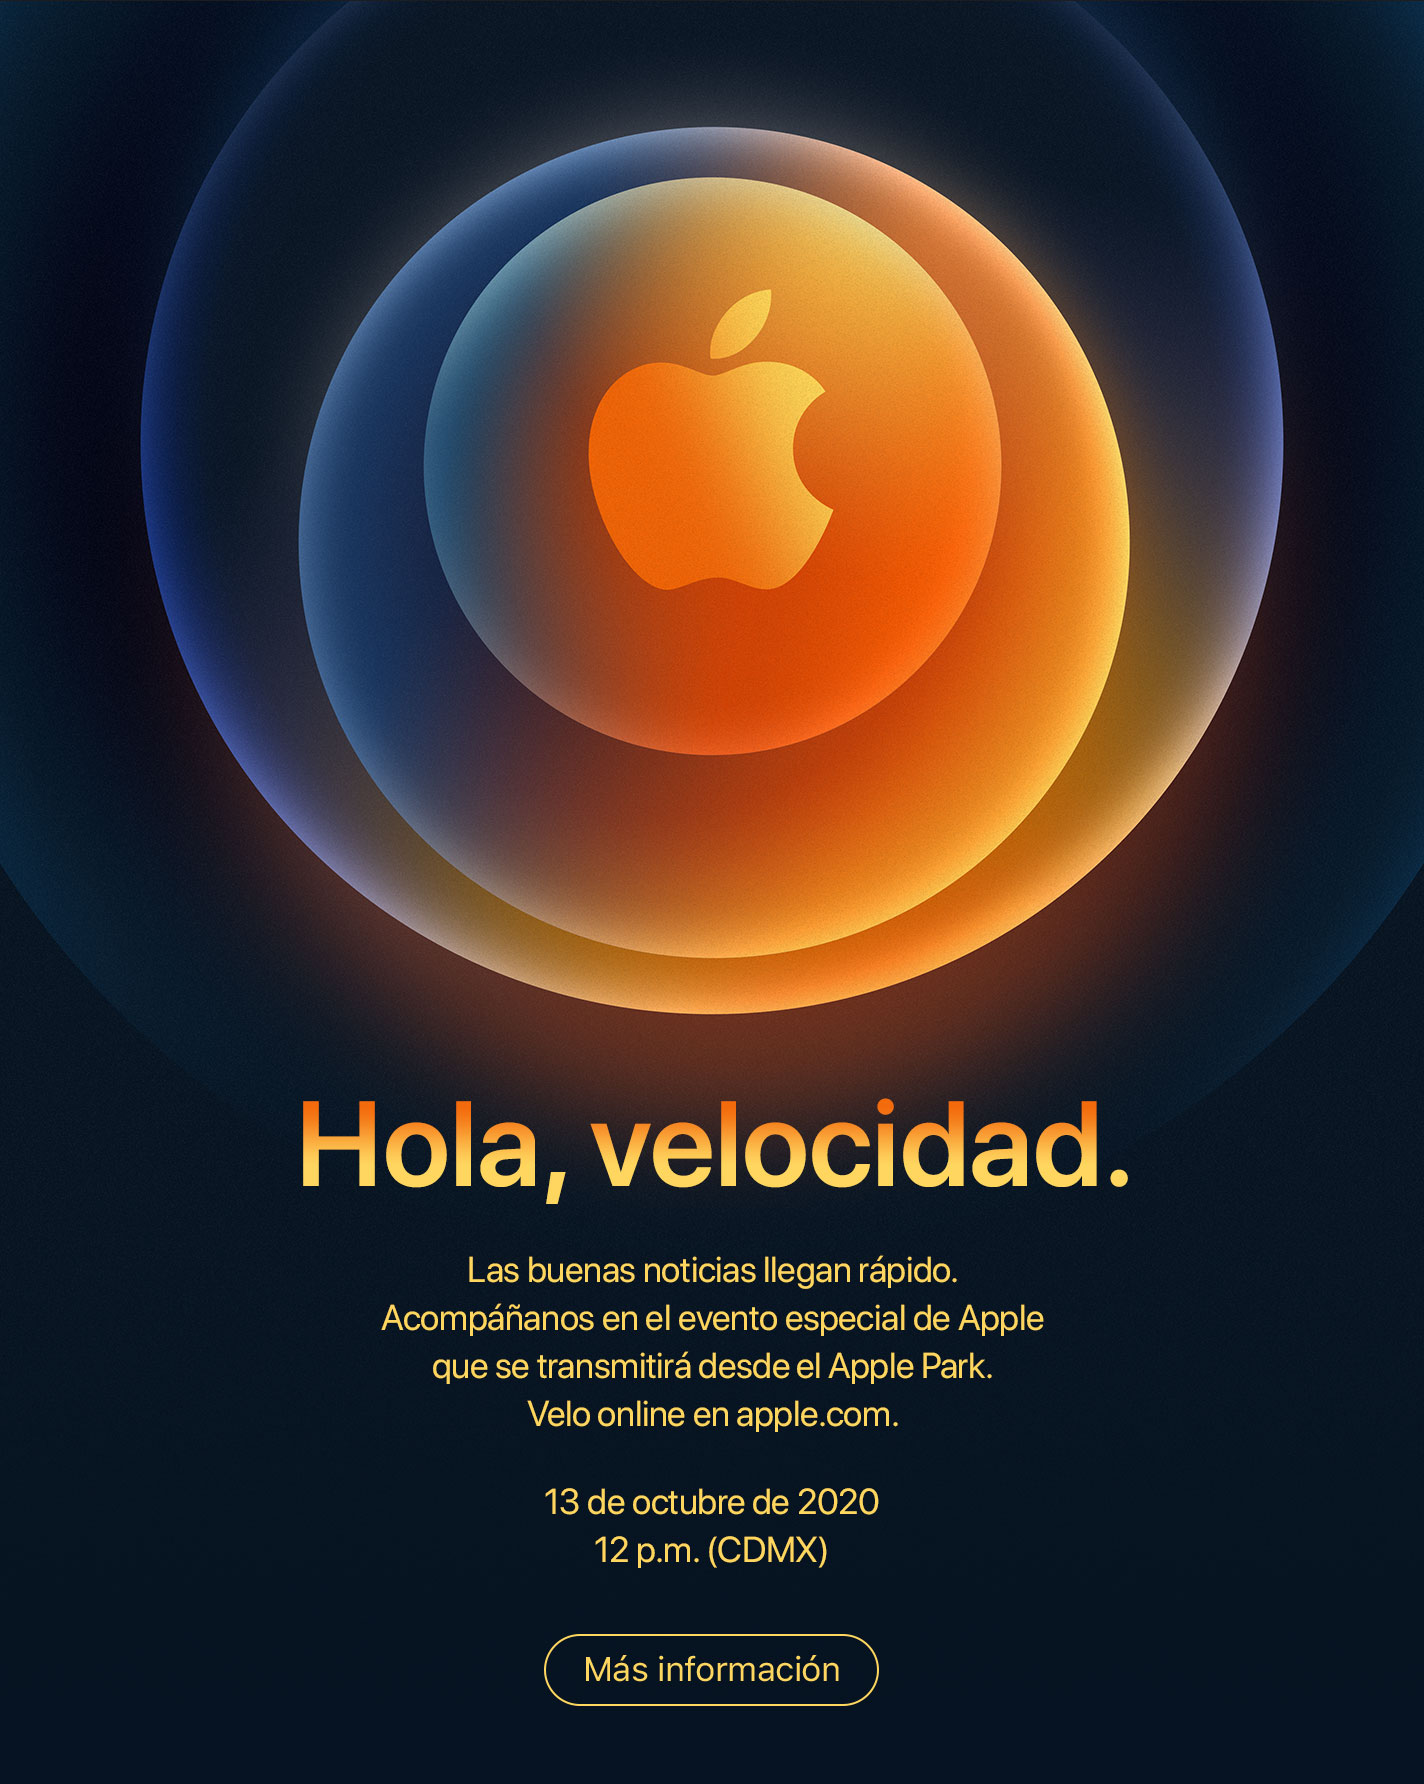 Hola, velocidad. Las buenas noticias llegan rápido. Acompáñanos en el evento especial de Apple que se transmitirá desde el Apple Park. Velo online en apple.com. 13 de octubre de 2020 12 p.m. (CDMX). Más información